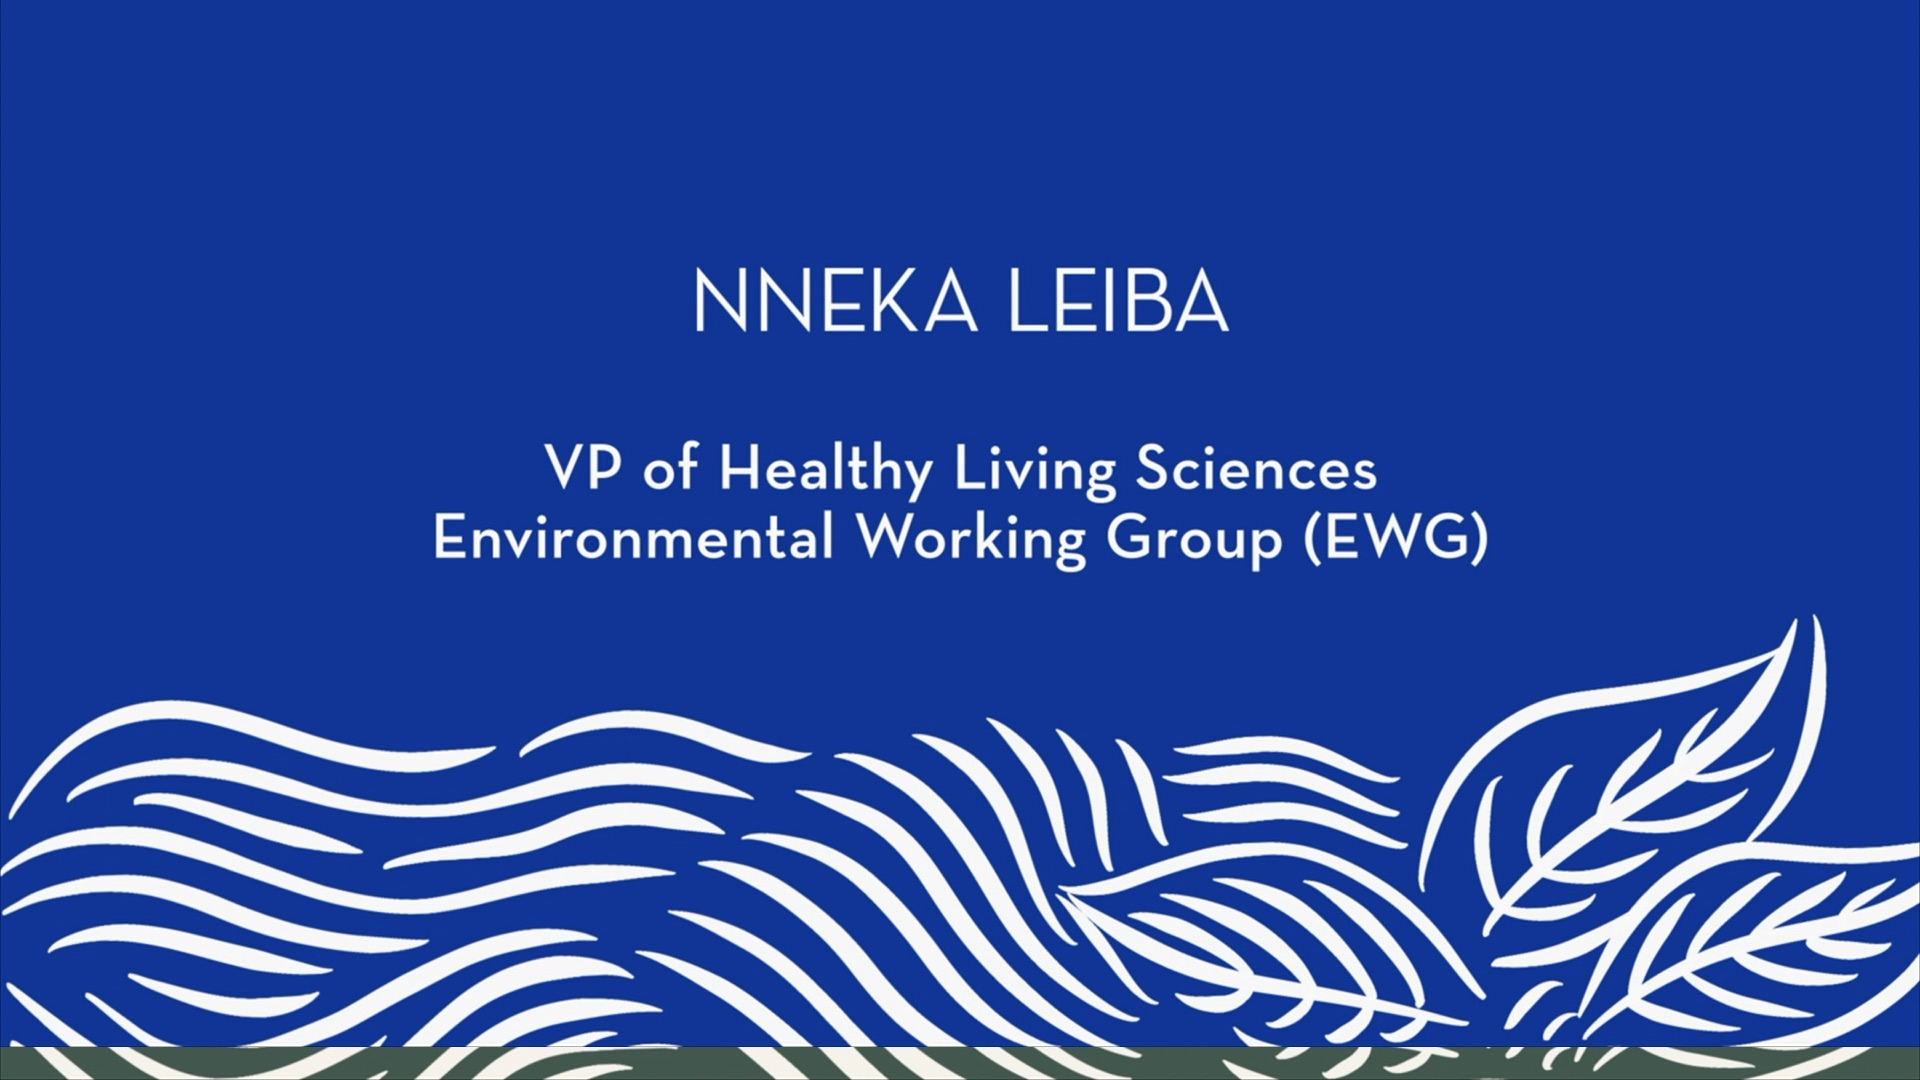 Nneka Leiba | Introduction